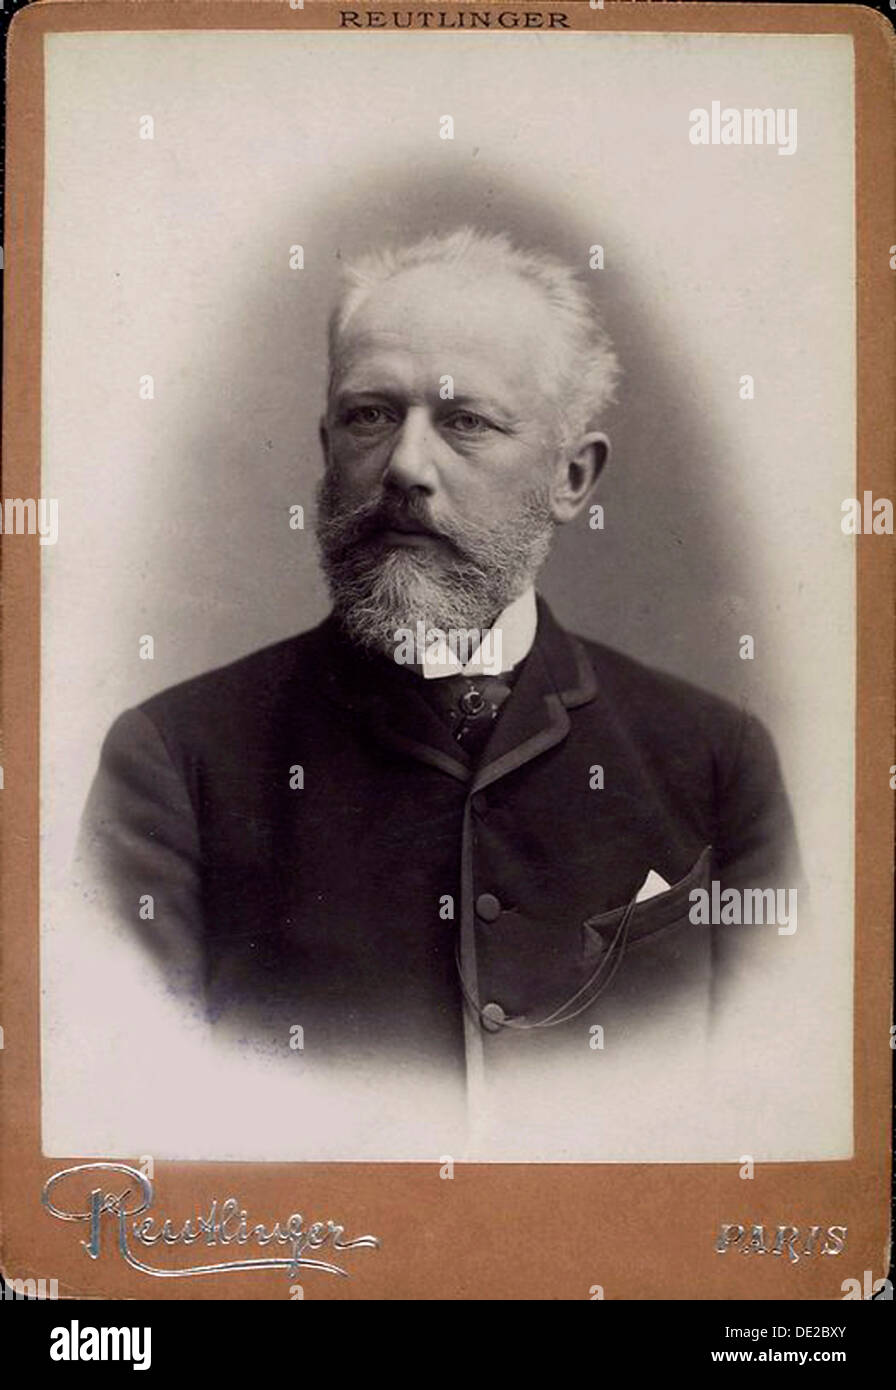 Peter Ilich Tchaikovsky, il compositore russo, fine del XIX secolo. Artista: Charles Reutlinger Foto Stock